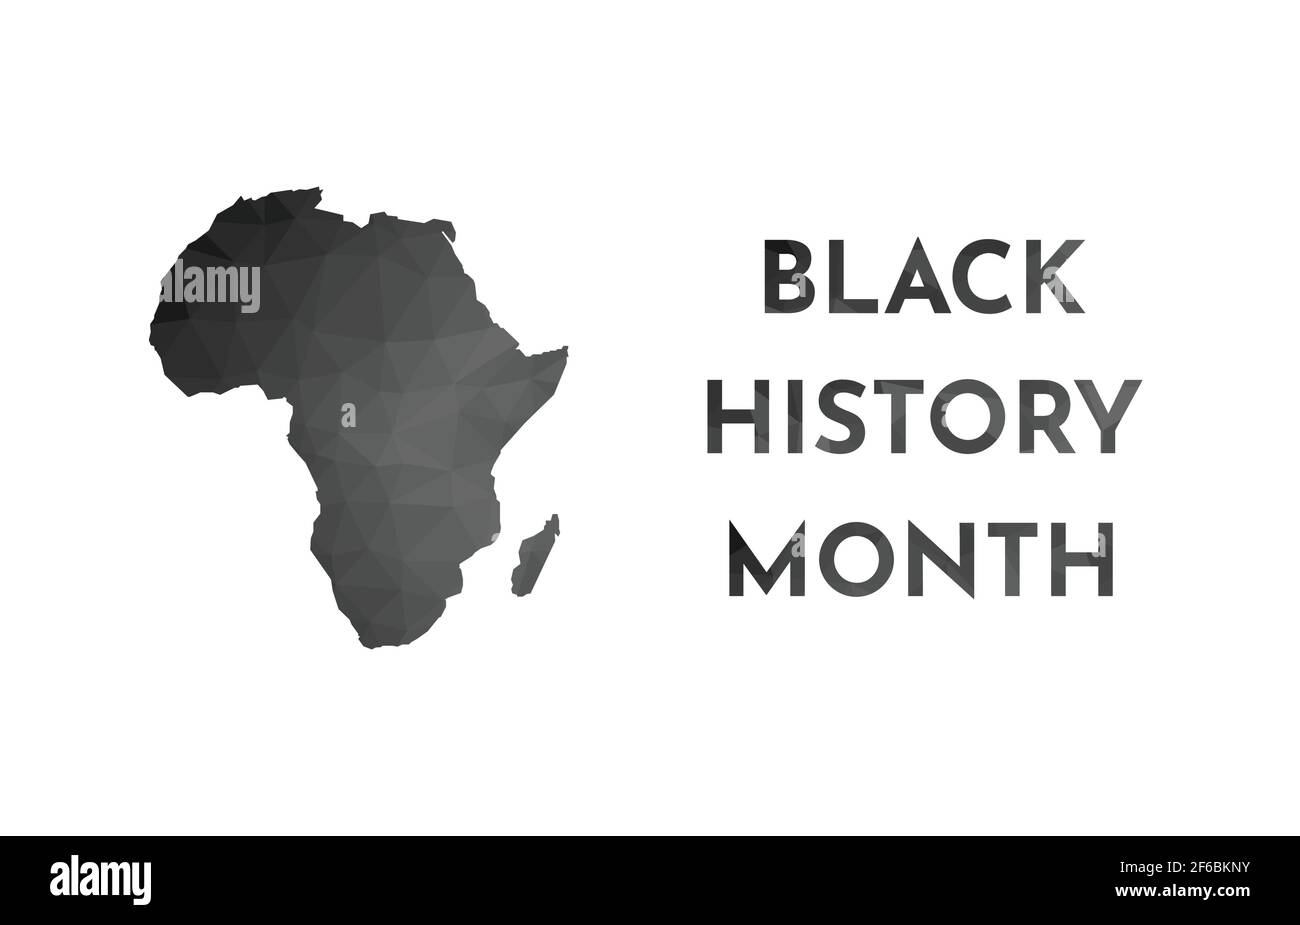 Vektor-Illustration Banner für Black History Month. Schwarze Low-Poly Silhouette von Afrika Karte und Text. Weißer Hintergrund. Stock Vektor